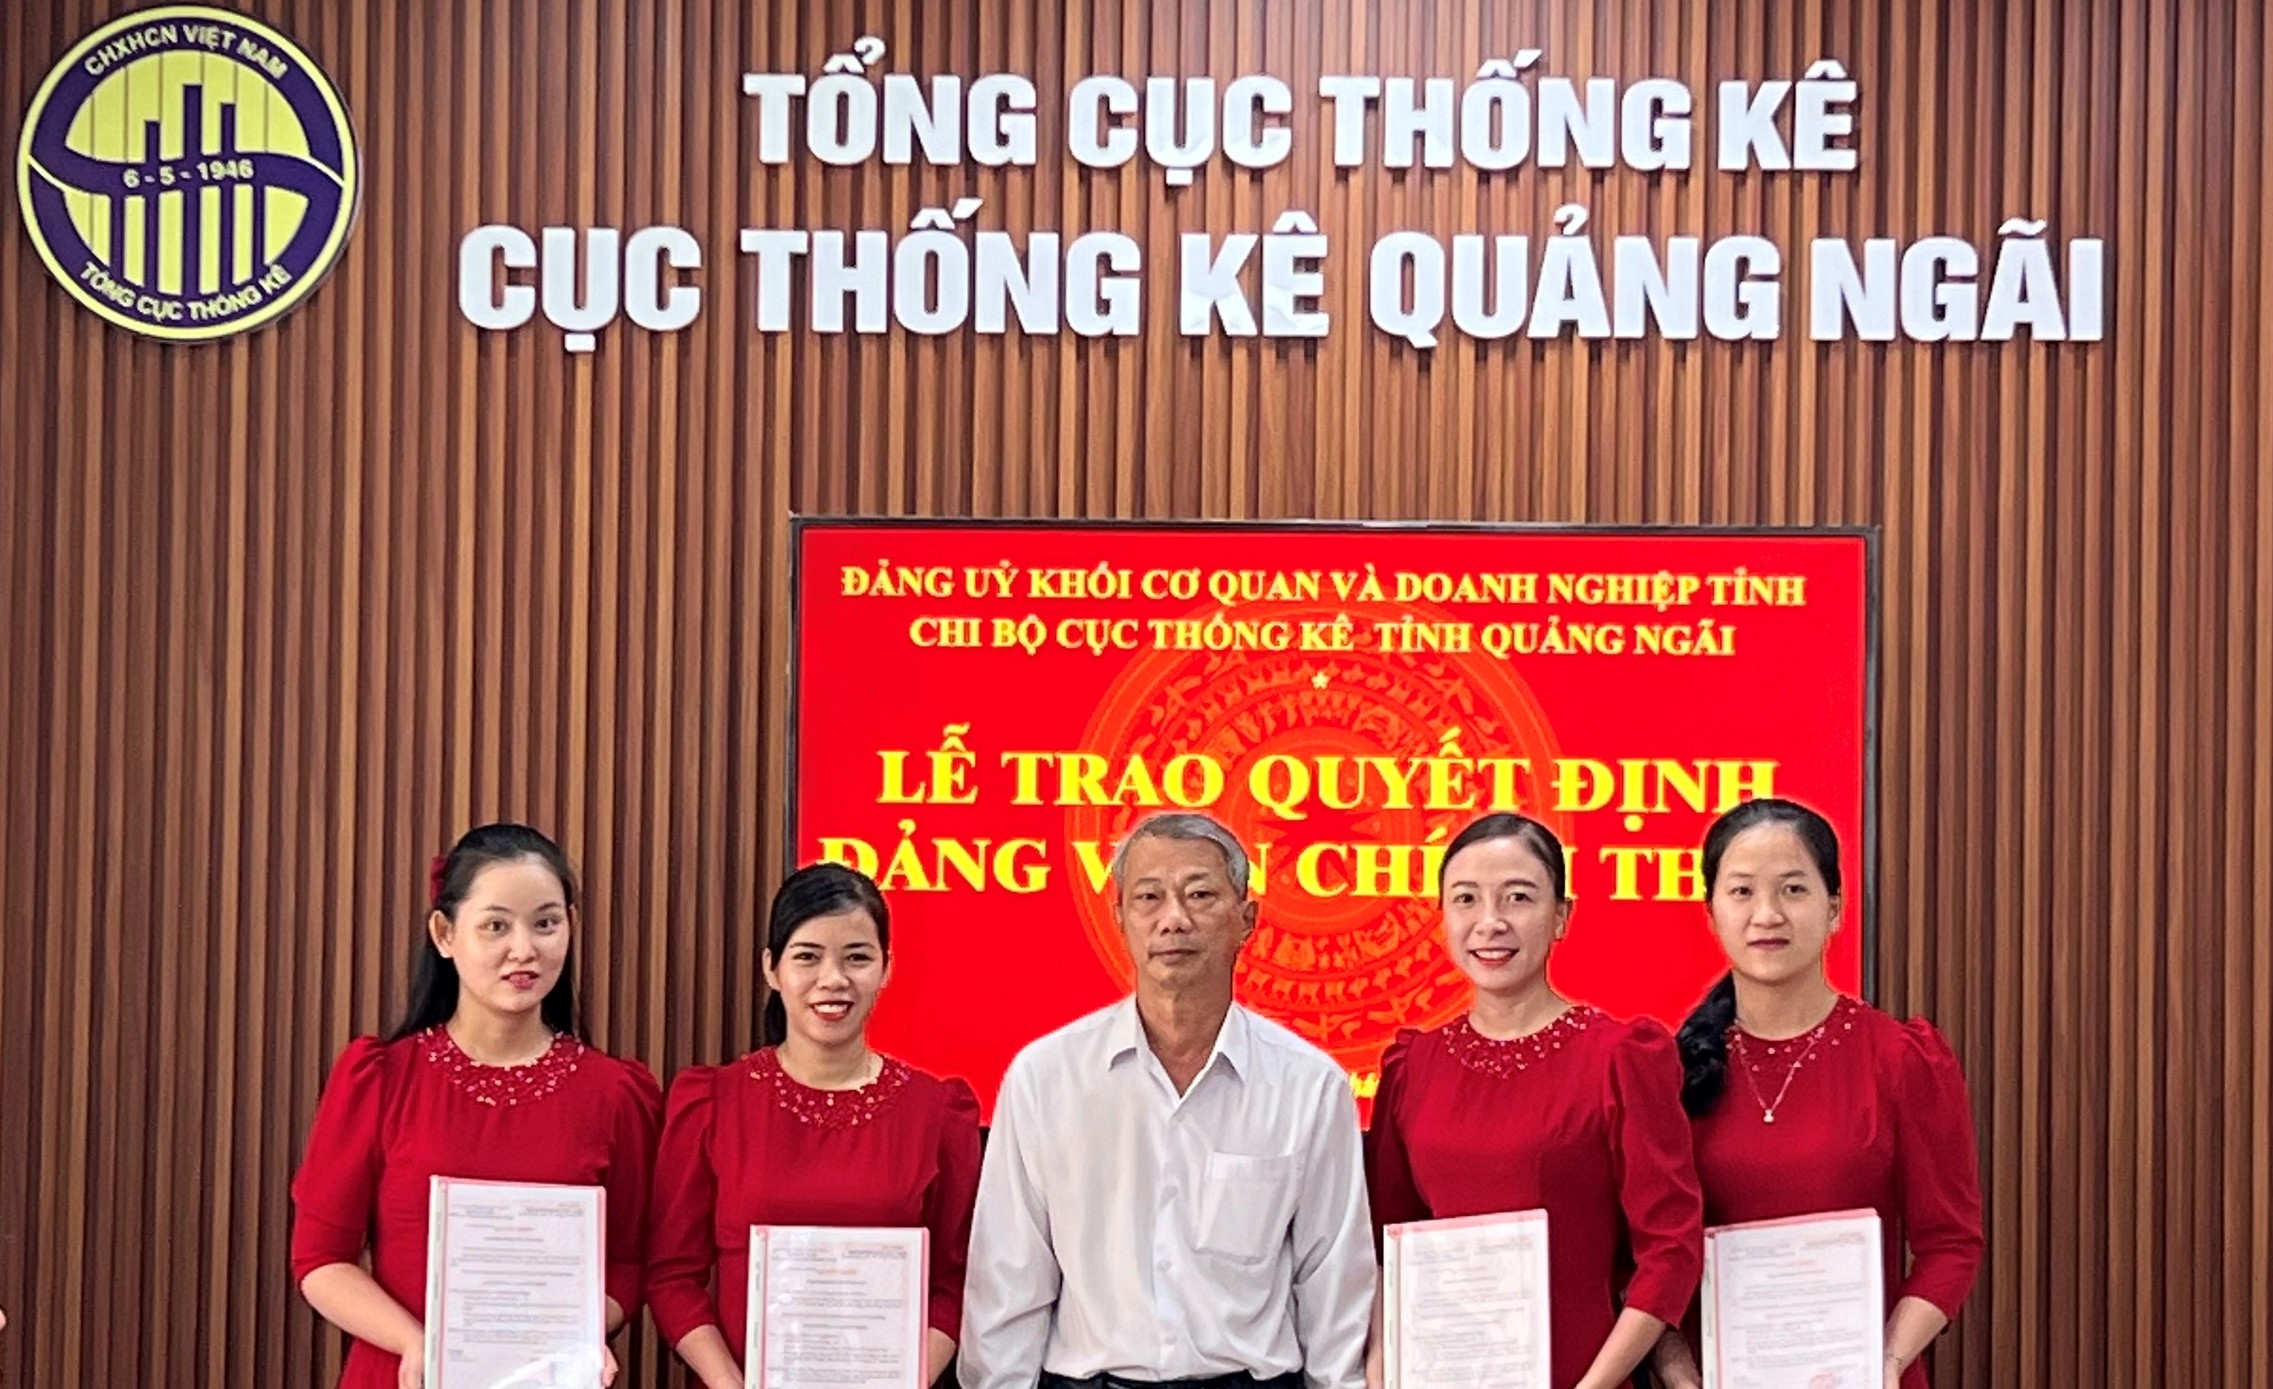 Đồng chí Nguyễn Hùng - Bí thư chi bộ trao quyết định cho 04 đồng chí đảng viên